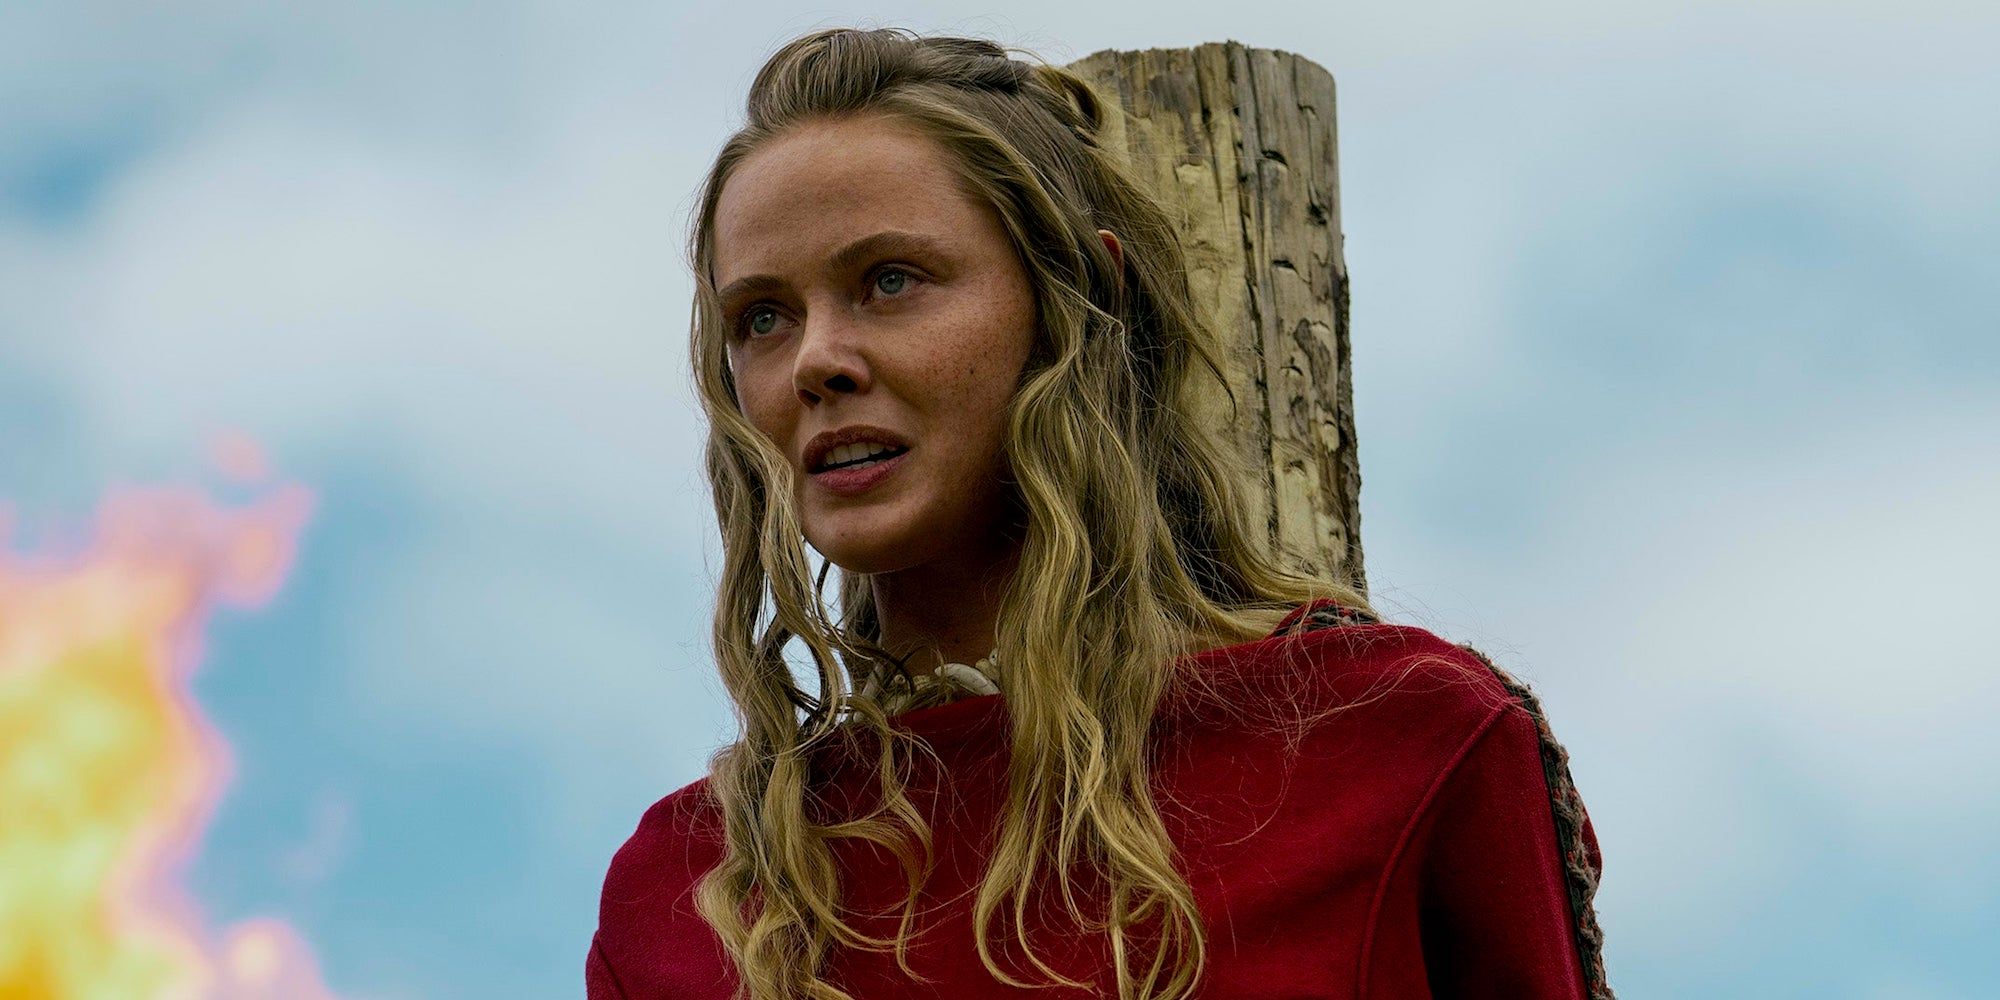 Vikings: Valhalla La temporada 3 será la última del programa, nuevas imágenes revelan el primer vistazo a los episodios finales